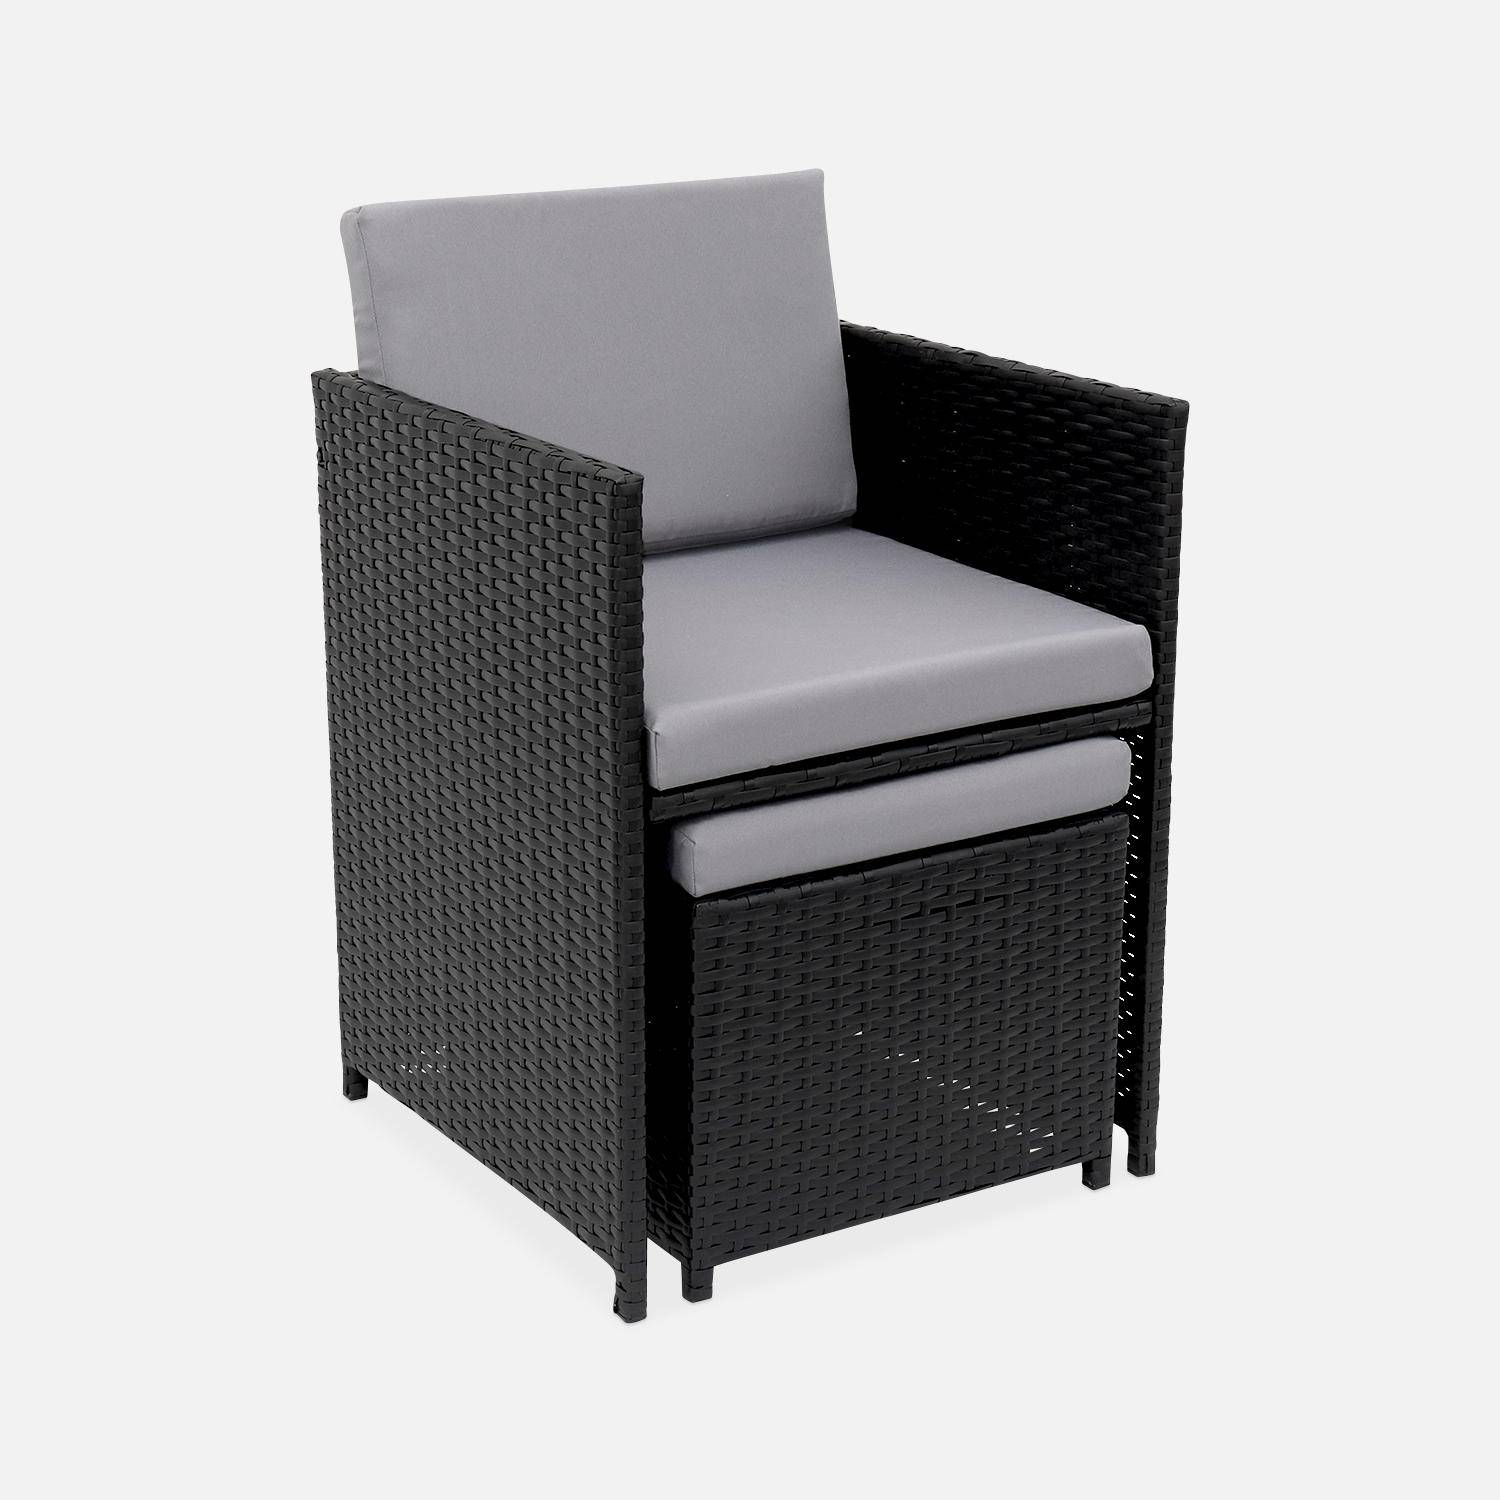 Conjunto de muebles de jardín 6-10 plazas - Fregadero - Color negro, cojines grises, mesa incorporada. Photo4